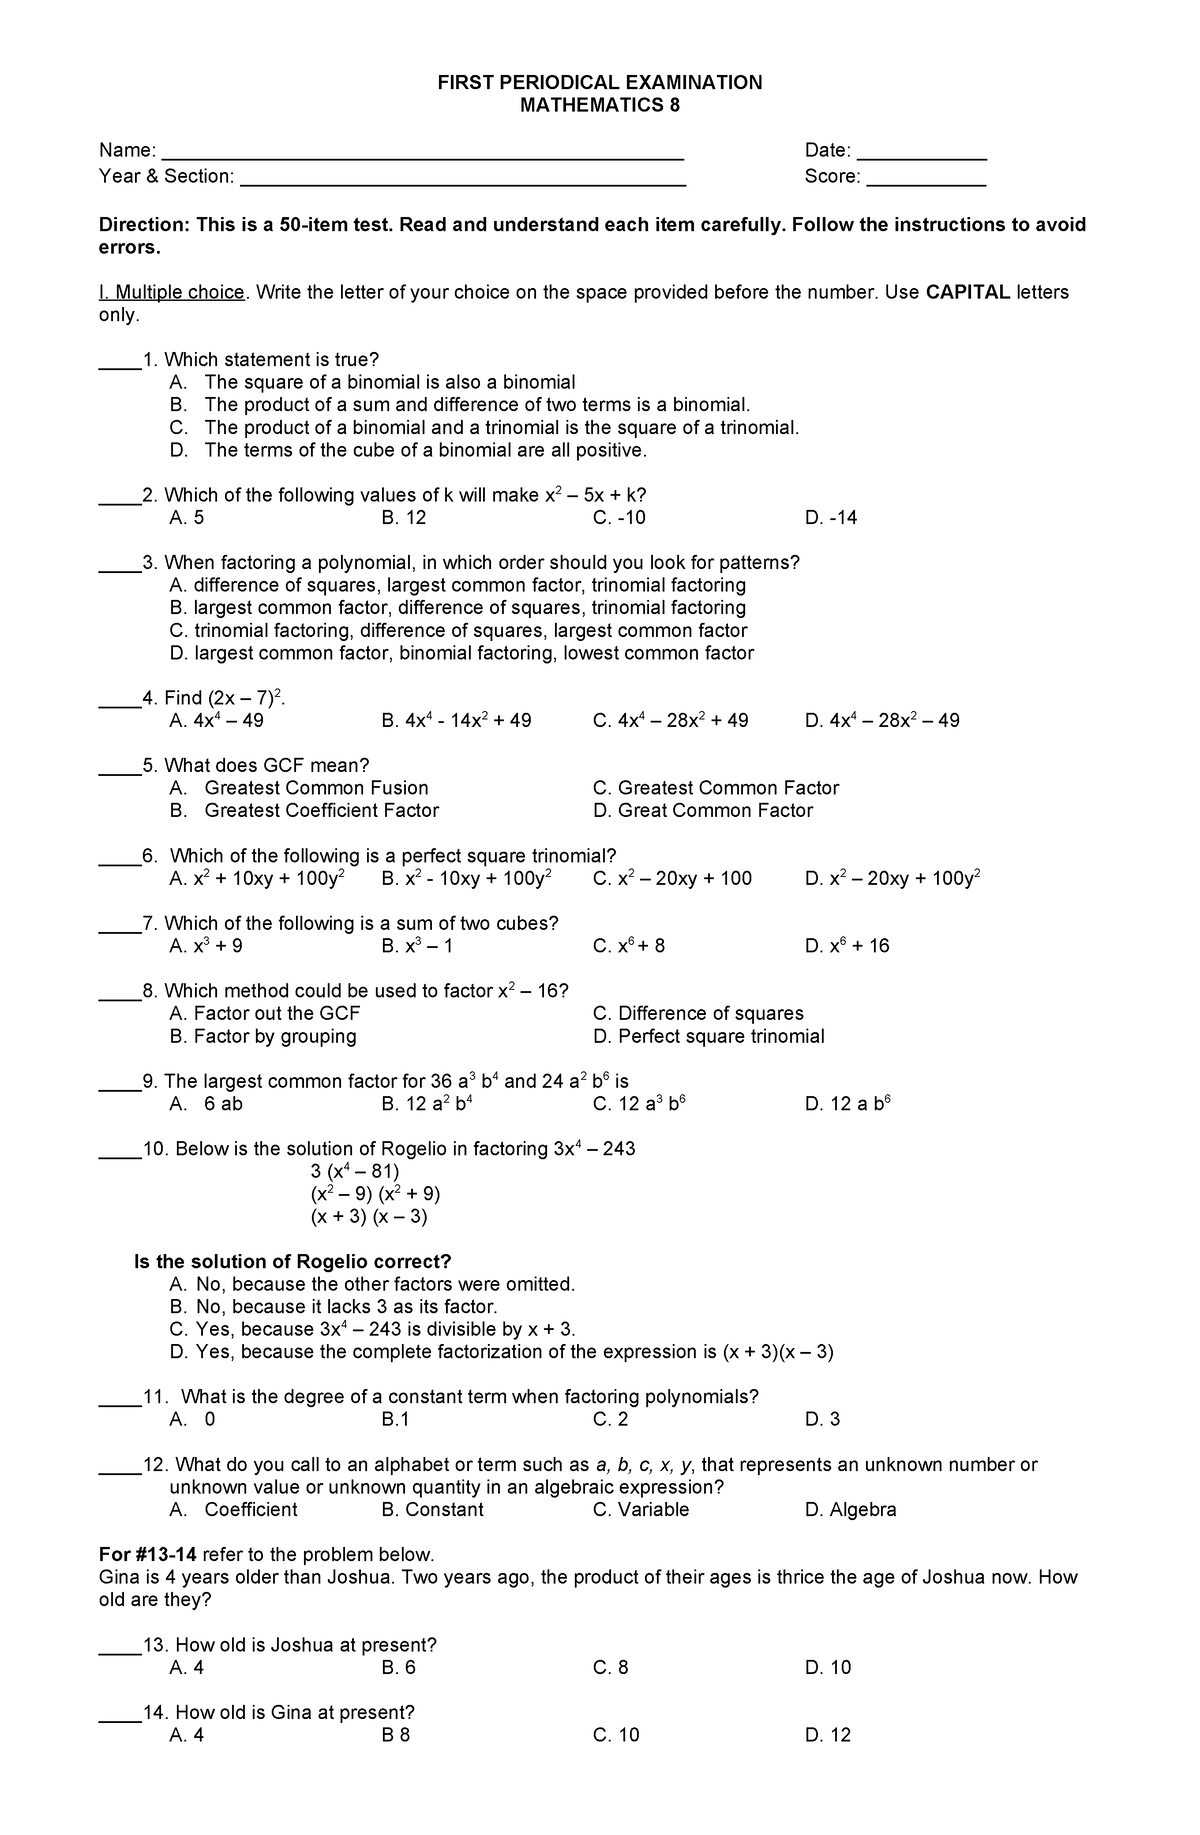 PT MAT H 8 SIS KEYS - A 50 item test on grade 8 mathematics - FIRST ...